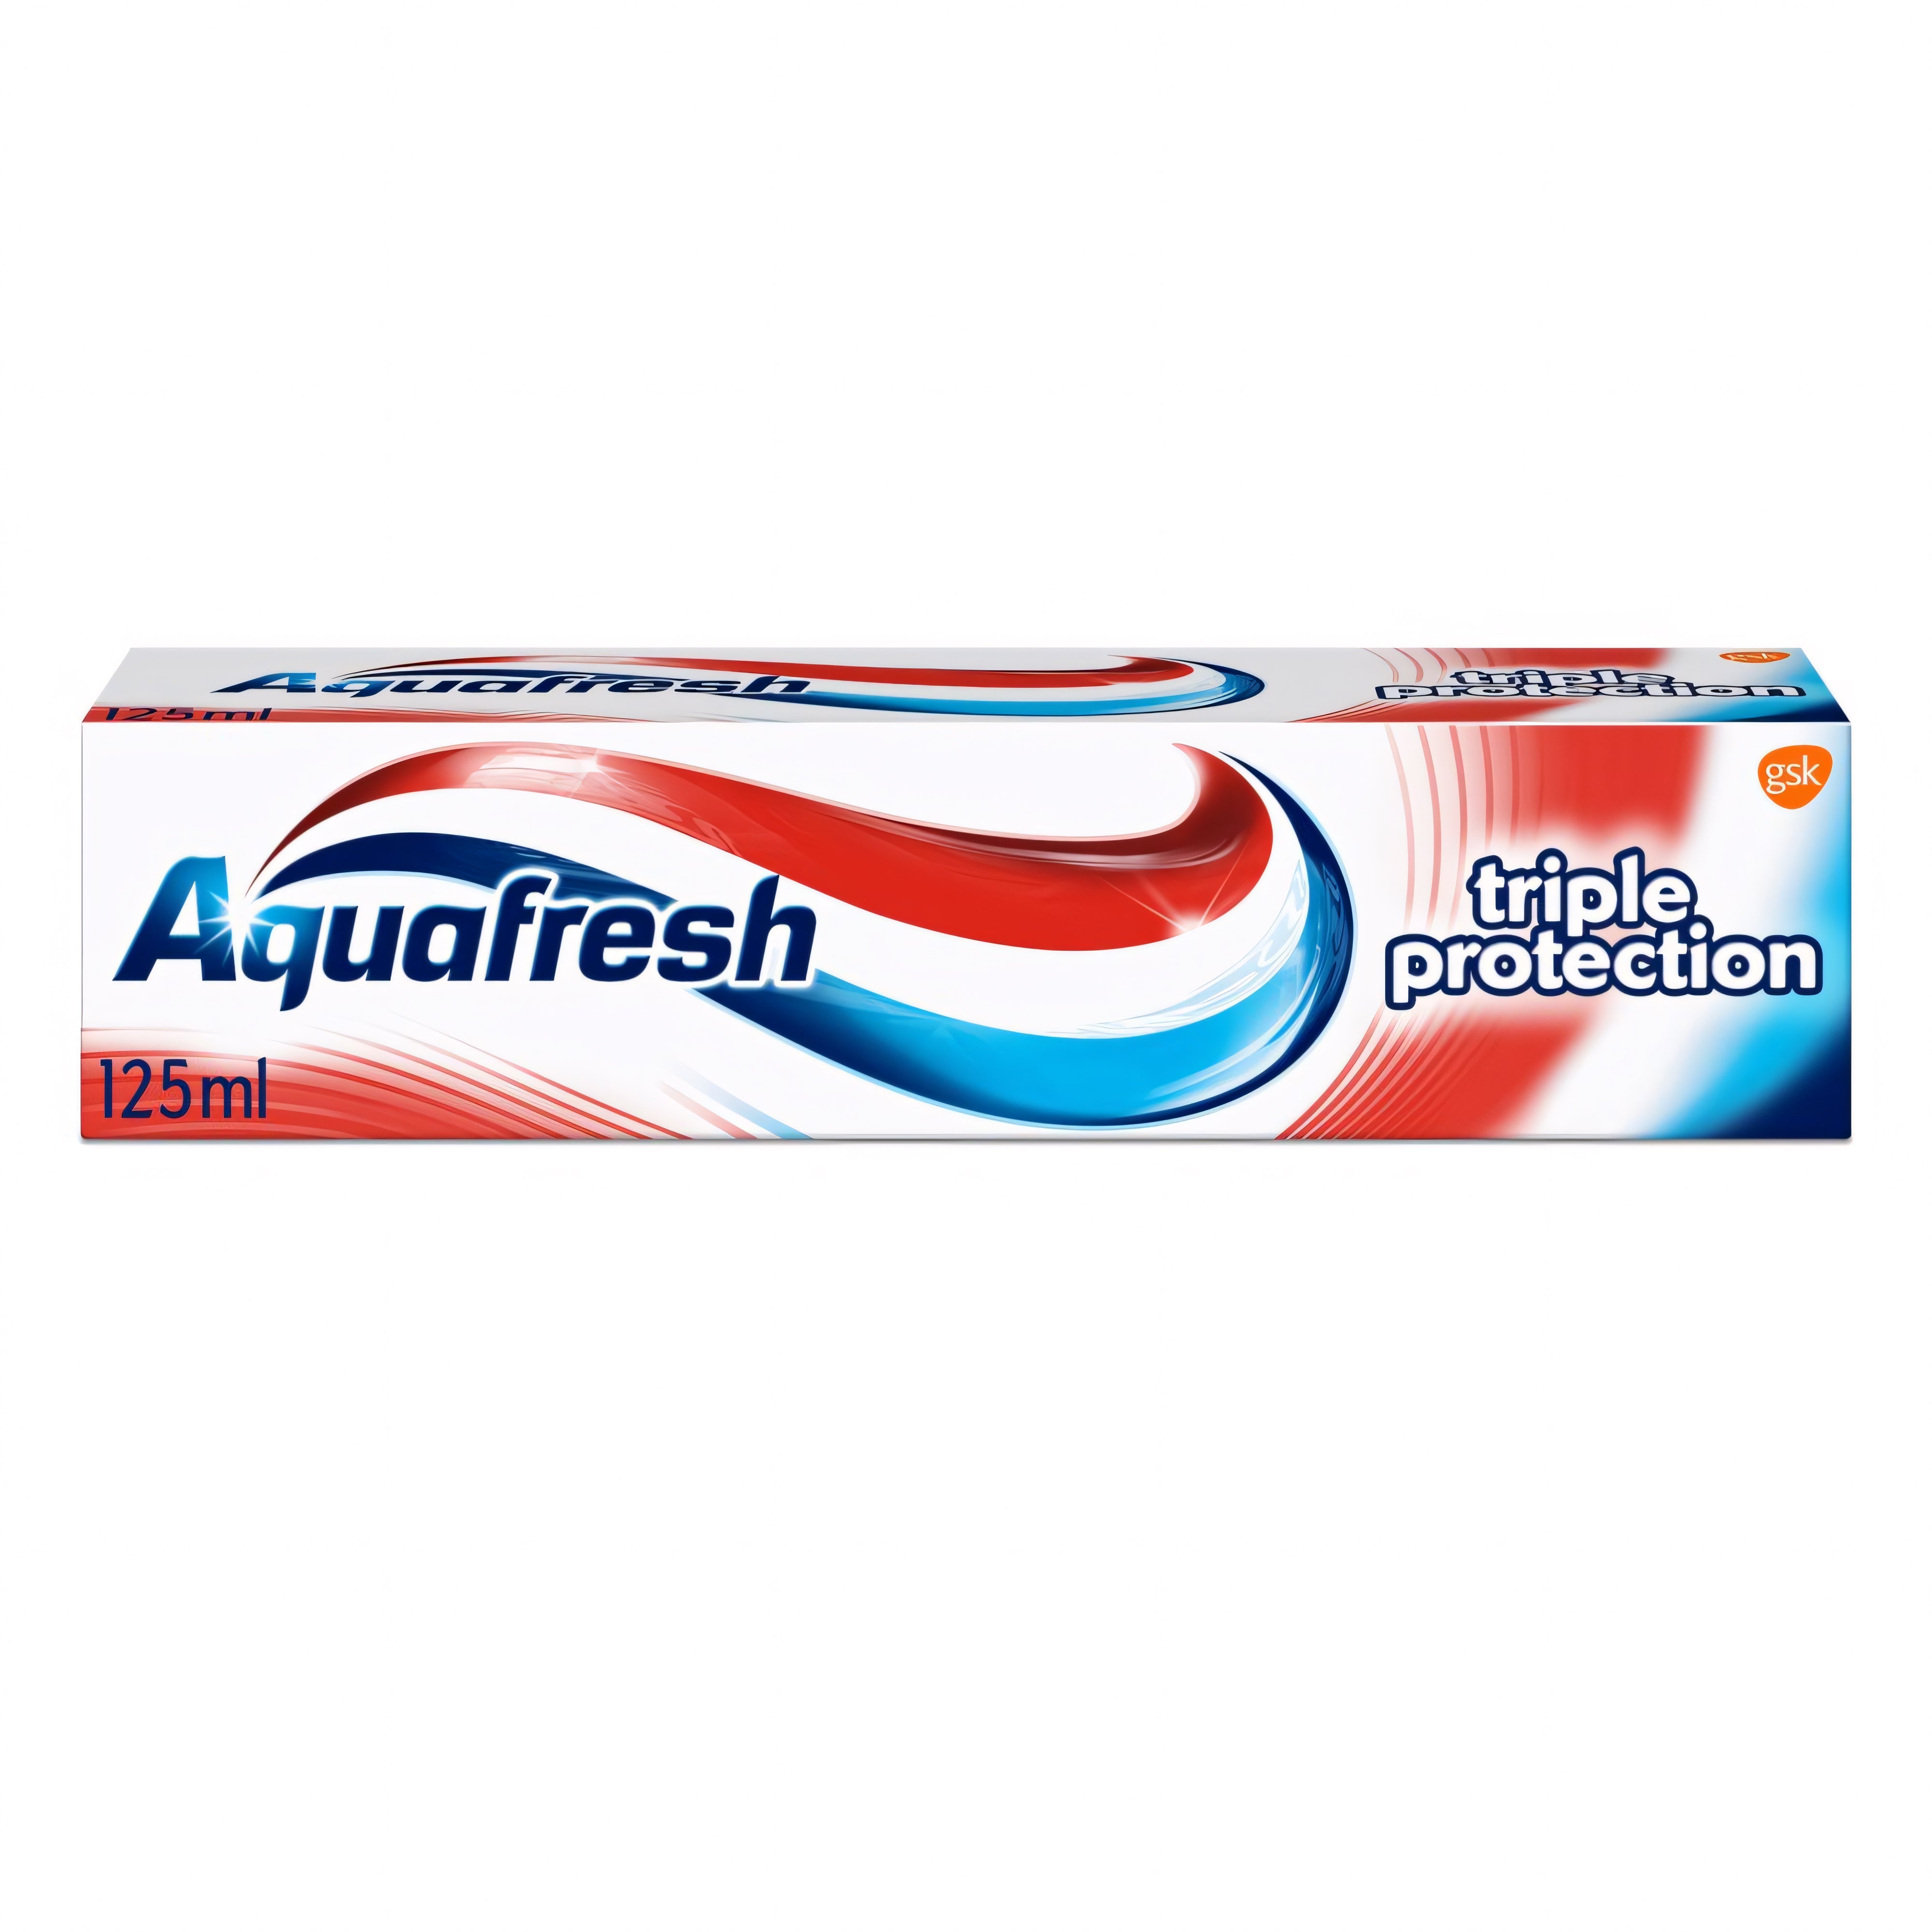 Aquafresh Toothbrush Triple Protection 125ml